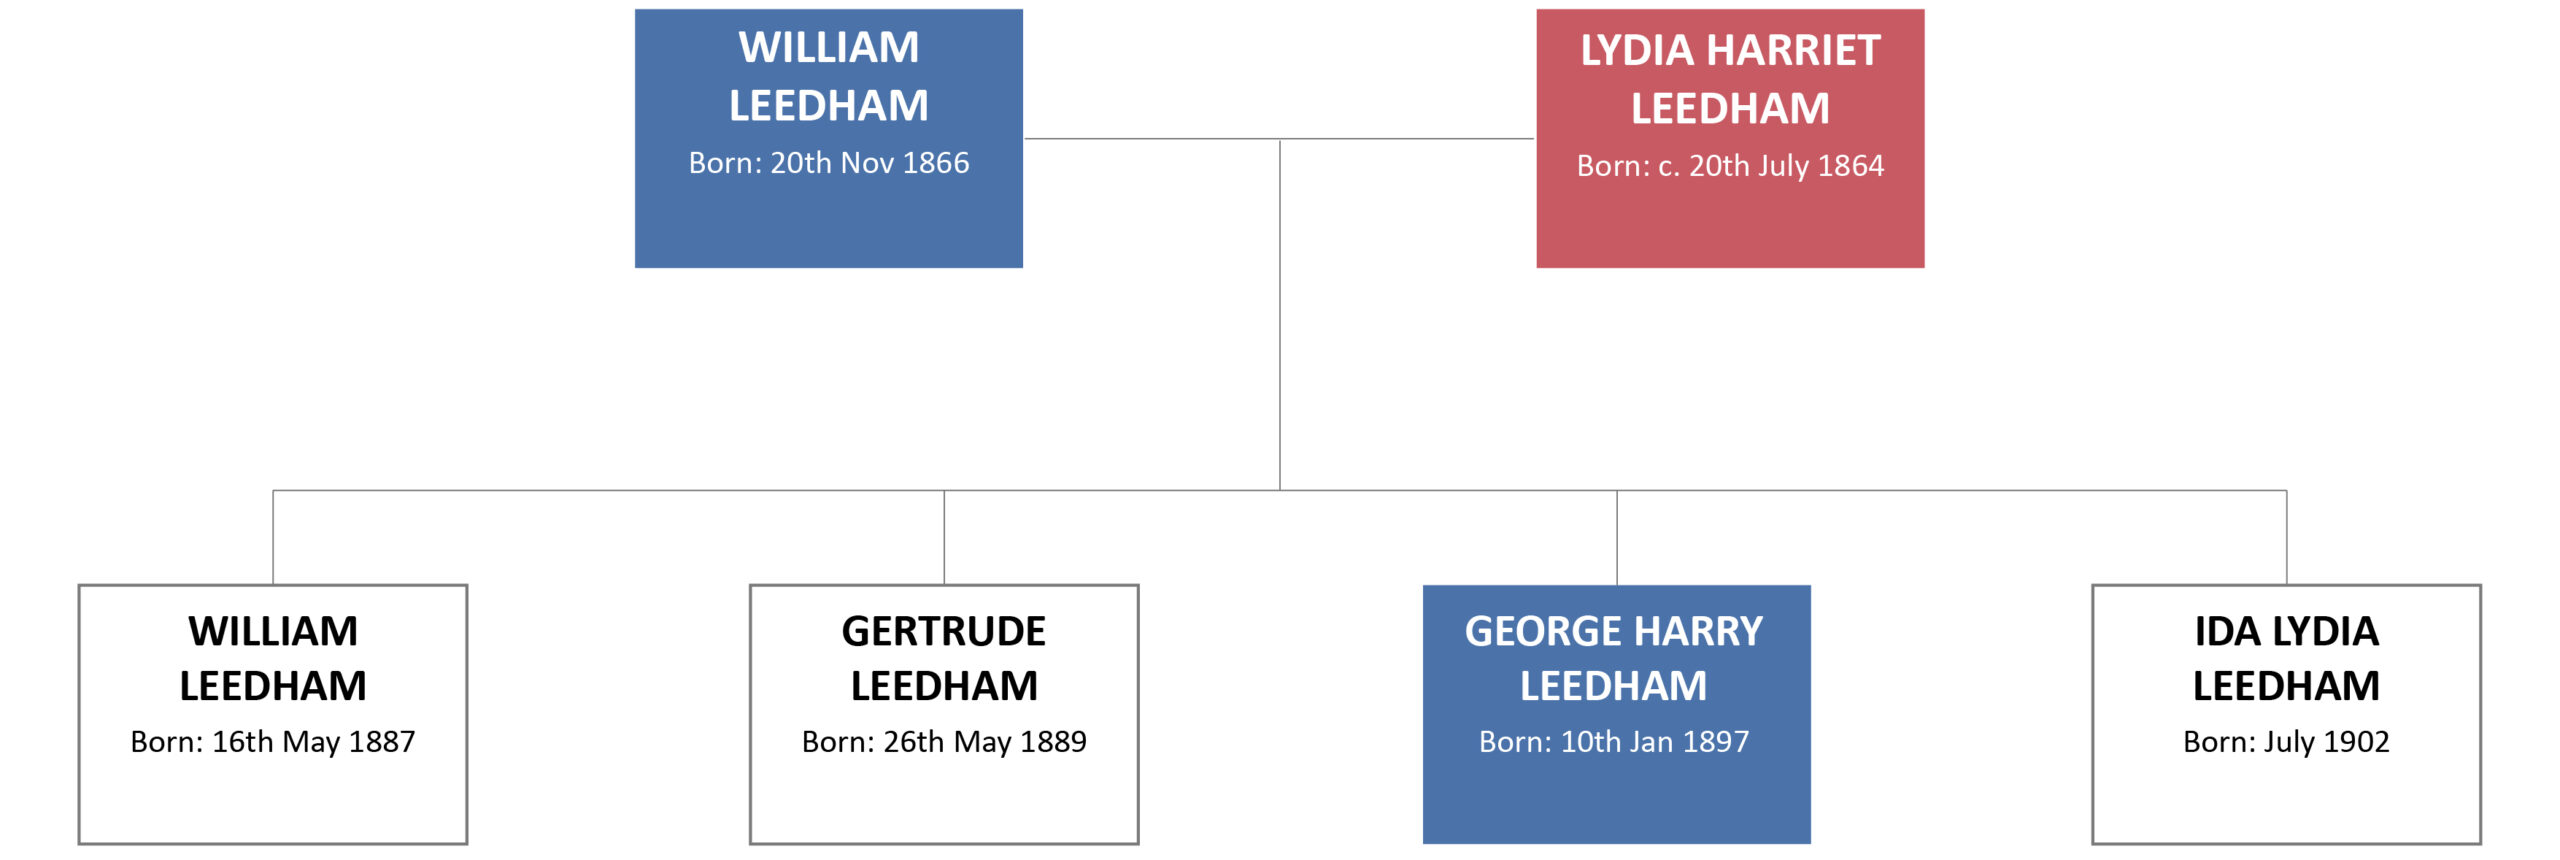 Leedham Family 1902